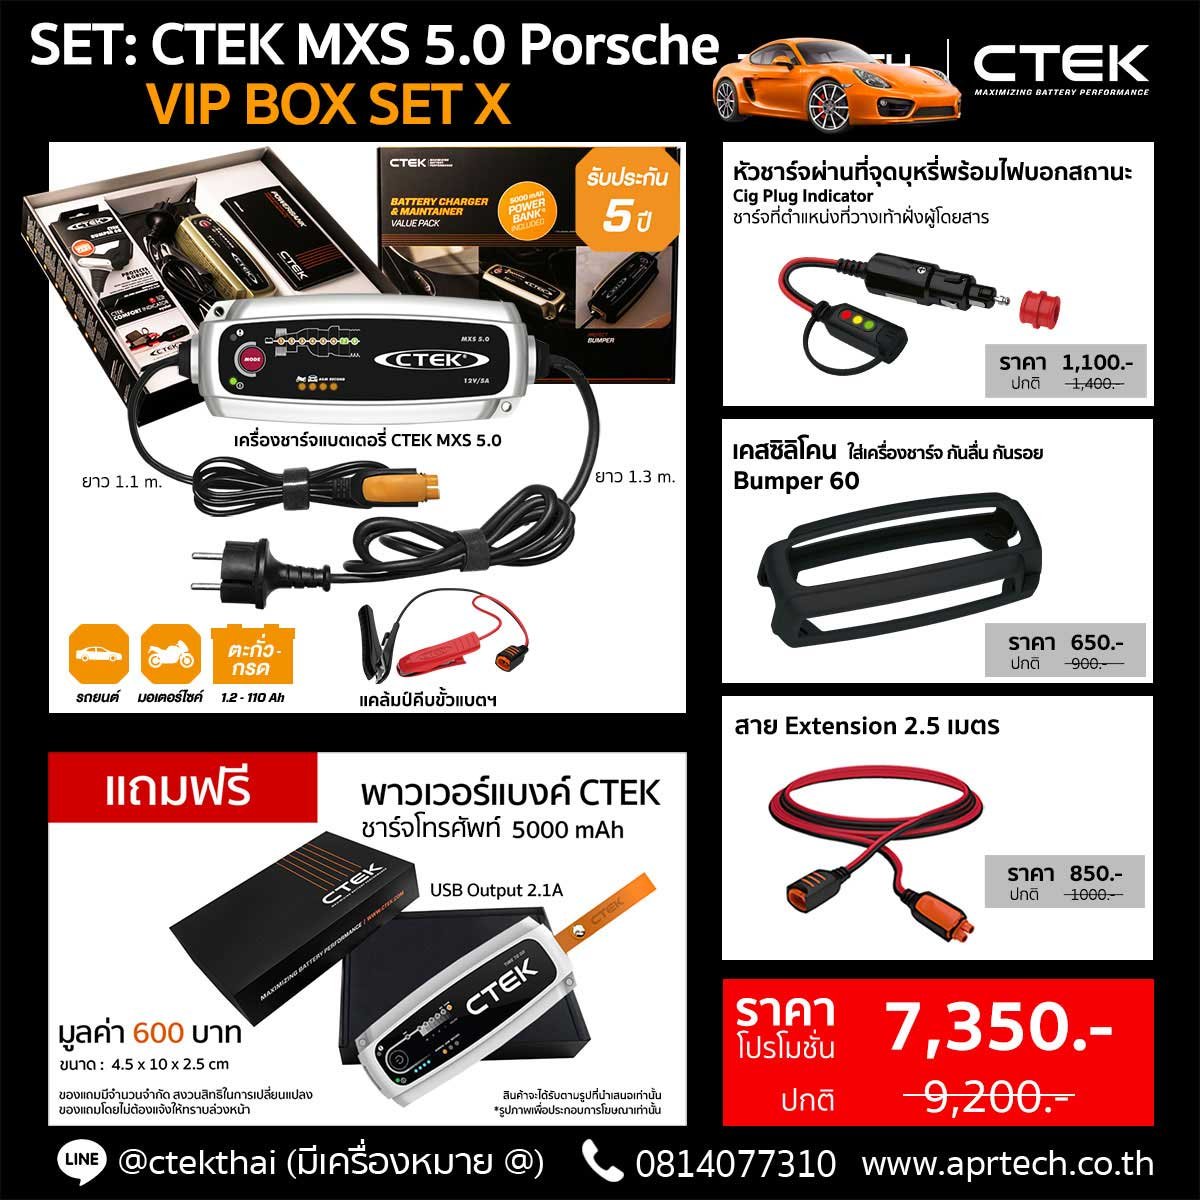 SET CTEK MXS 5.0 Porsche VIP BOX SET X (CTEK MXS 5.0 + Indicator Cig Plug + Bumper + Extension 2.5)